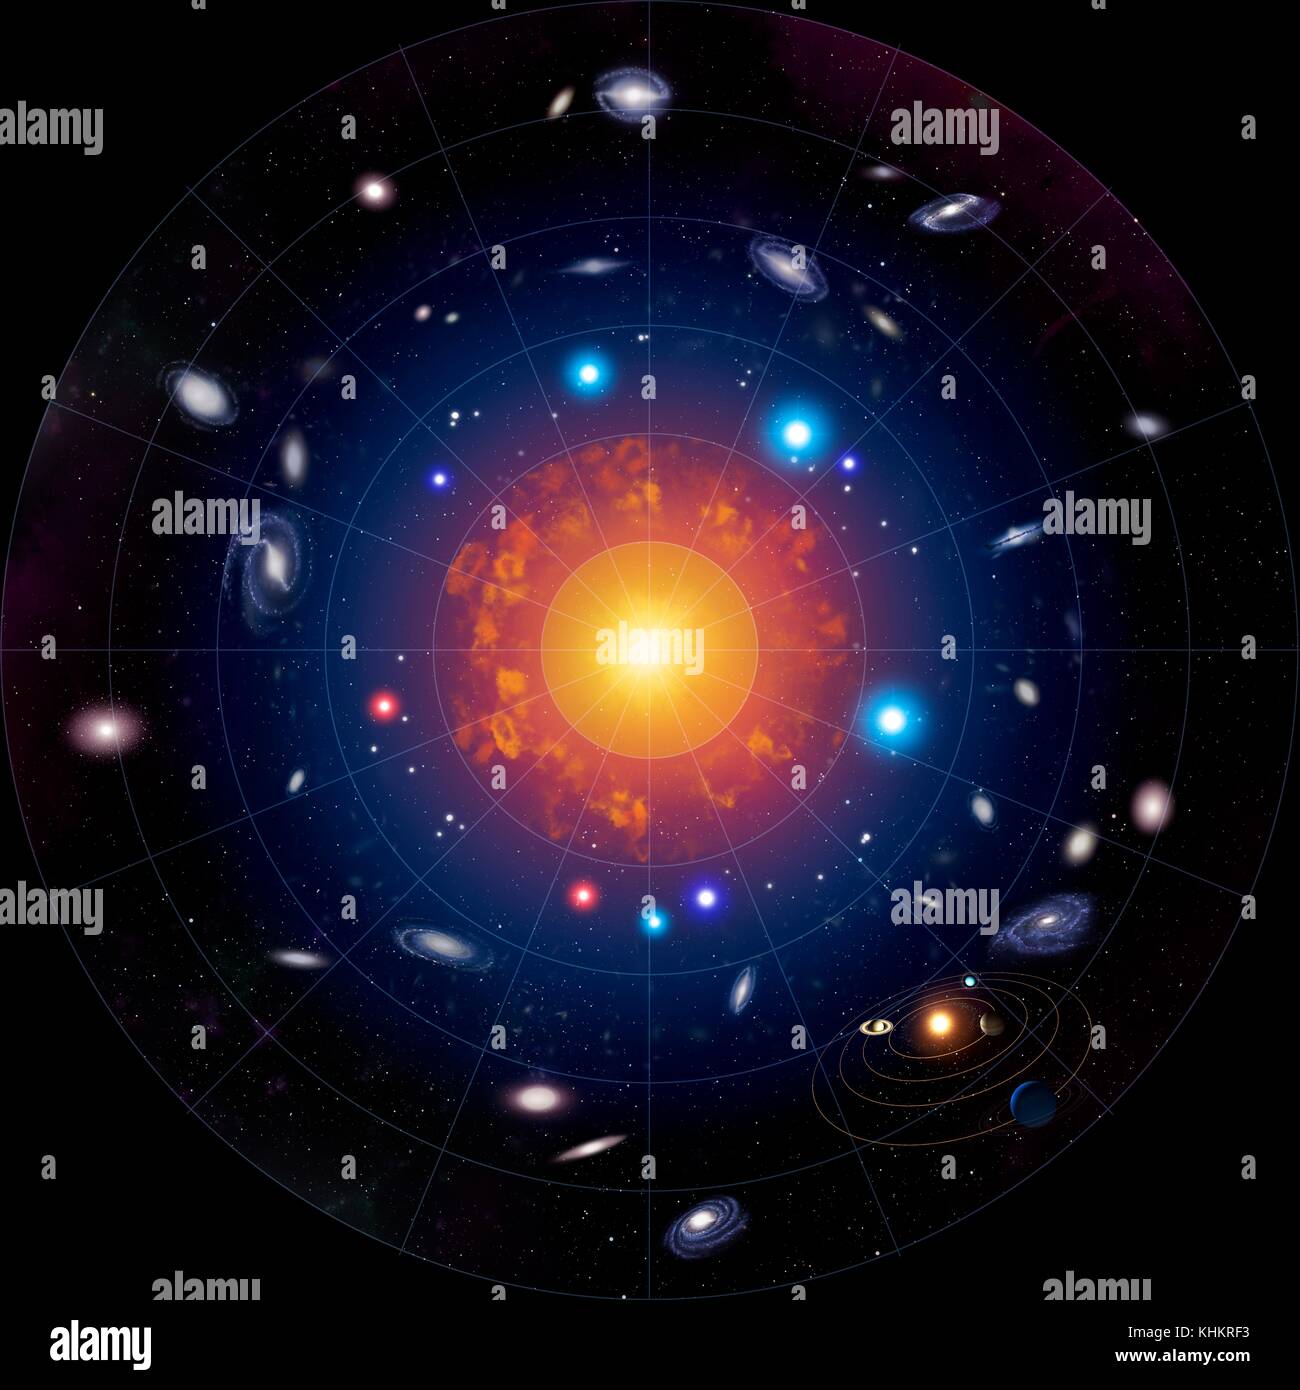 Illustrazione schematica che mostra lo sviluppo dell'universo dal Big Bang al presente giorno.Al centro è il Big Bang stesso,l'evento che ha creato lo spazio e il tempo e ha iniziato l'universo di espansione del.Dopo 380.000 anni,l'universo divenne opaca alla radiazione per la prima volta,e la materia ha cominciato ad aggregarsi a formare nubi di gas.da 200 milioni di anni,localizzato contrazioni gravitazionale entro queste nubi di gas aveva portato per le prime generazioni di stelle.Poi le prime galassie che si ritiene abbiano sviluppato dopo circa 1 miliardi di anni. Foto Stock